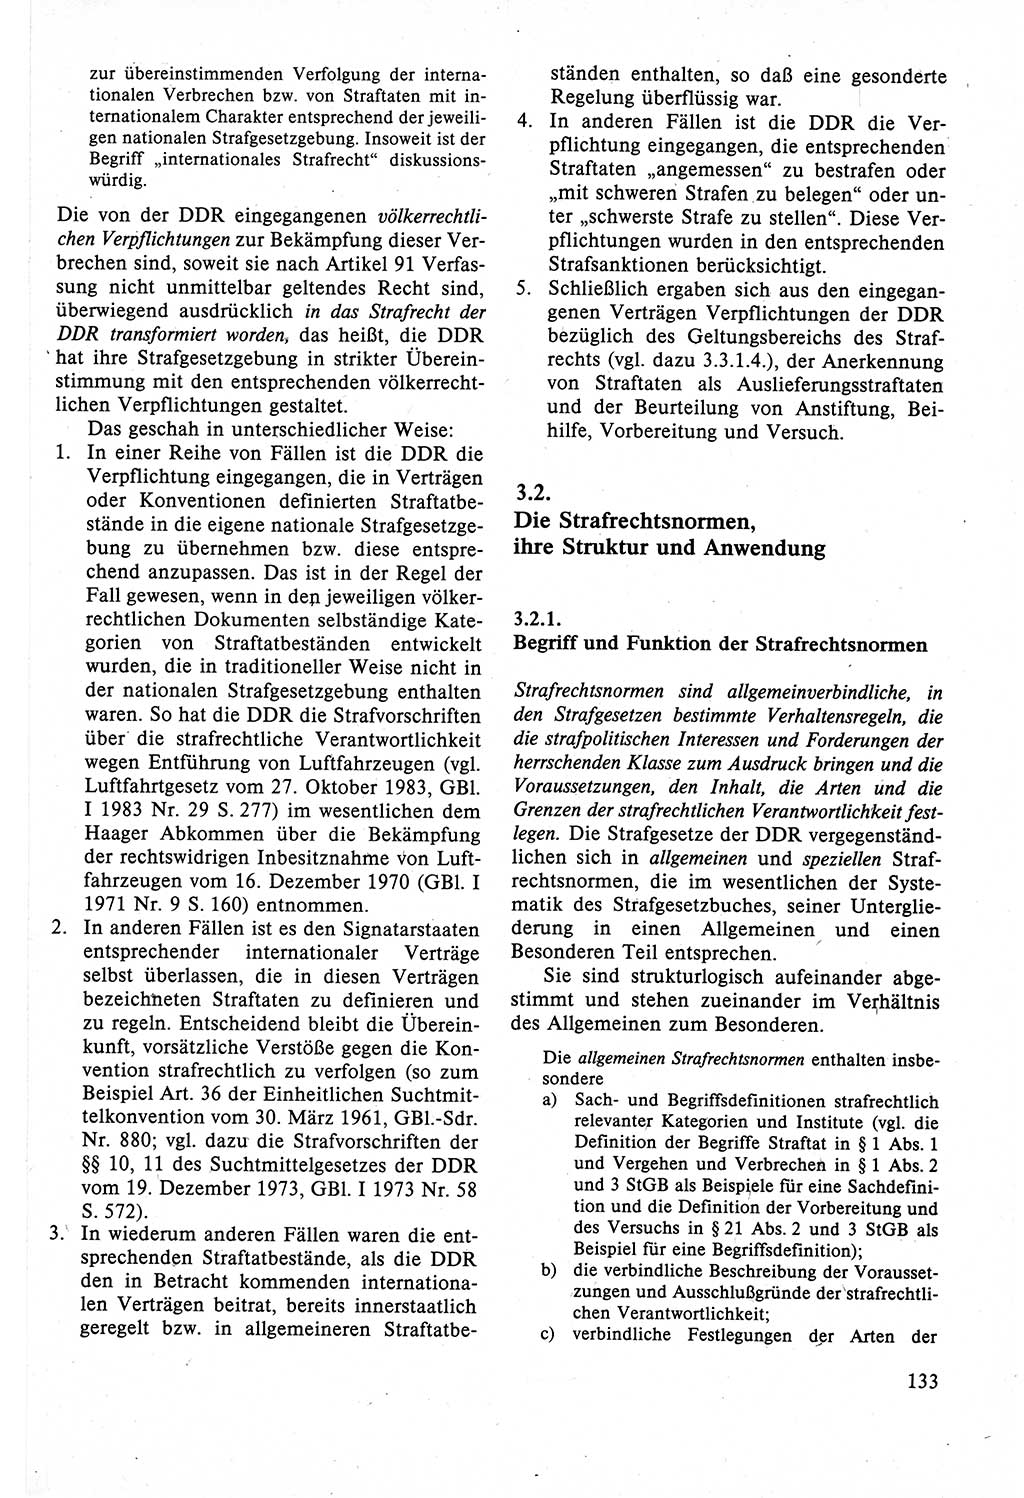 Strafrecht der DDR (Deutsche Demokratische Republik), Lehrbuch 1988, Seite 133 (Strafr. DDR Lb. 1988, S. 133)